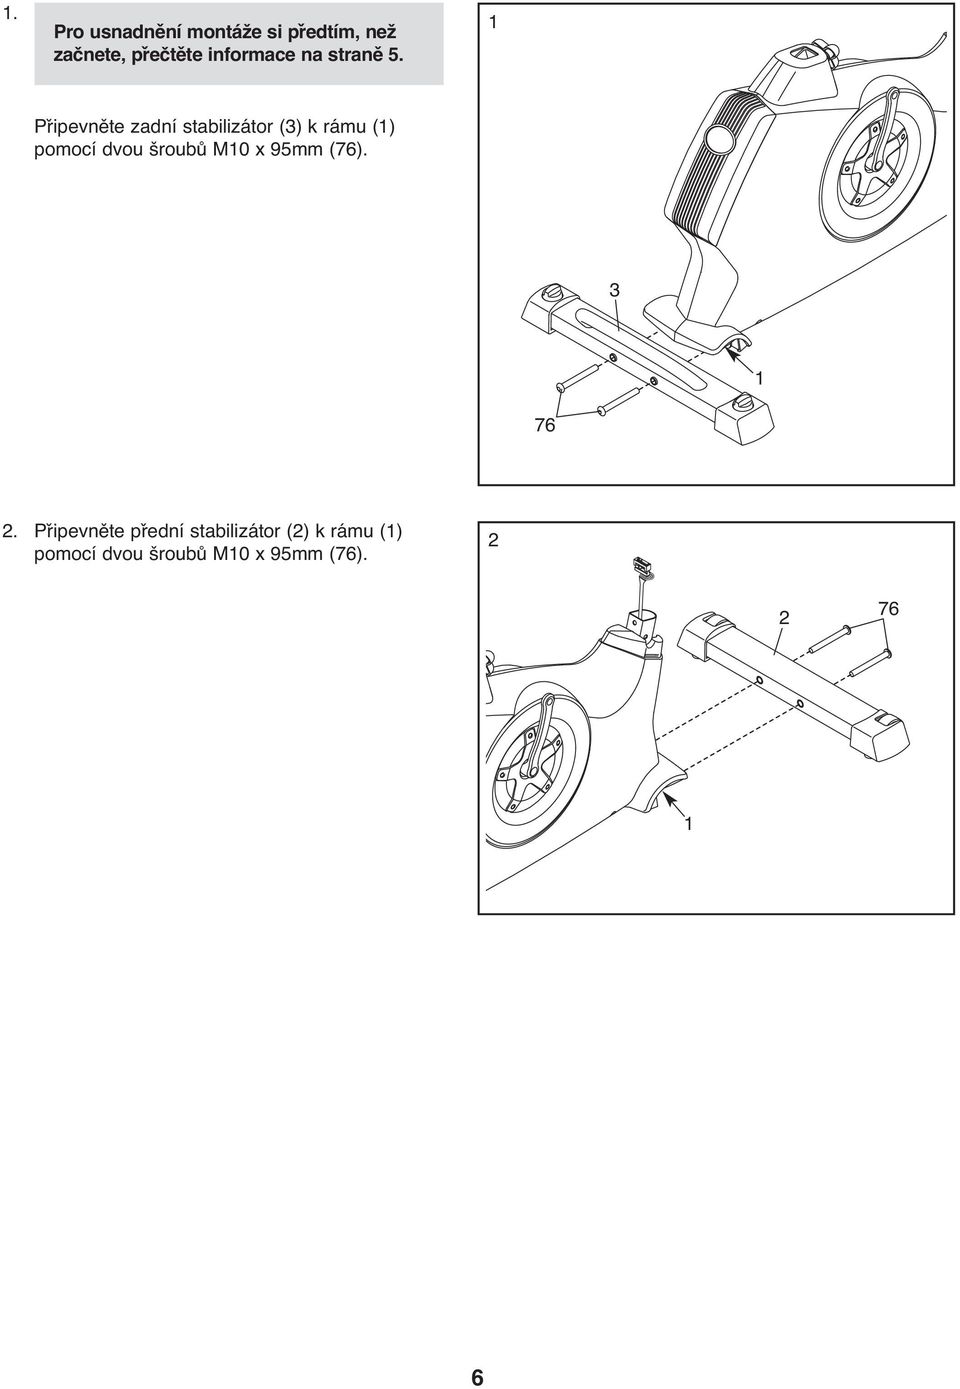 1 Připevněte zadní stabilizátor (3) k rámu (1) pomocí dvou šroubů